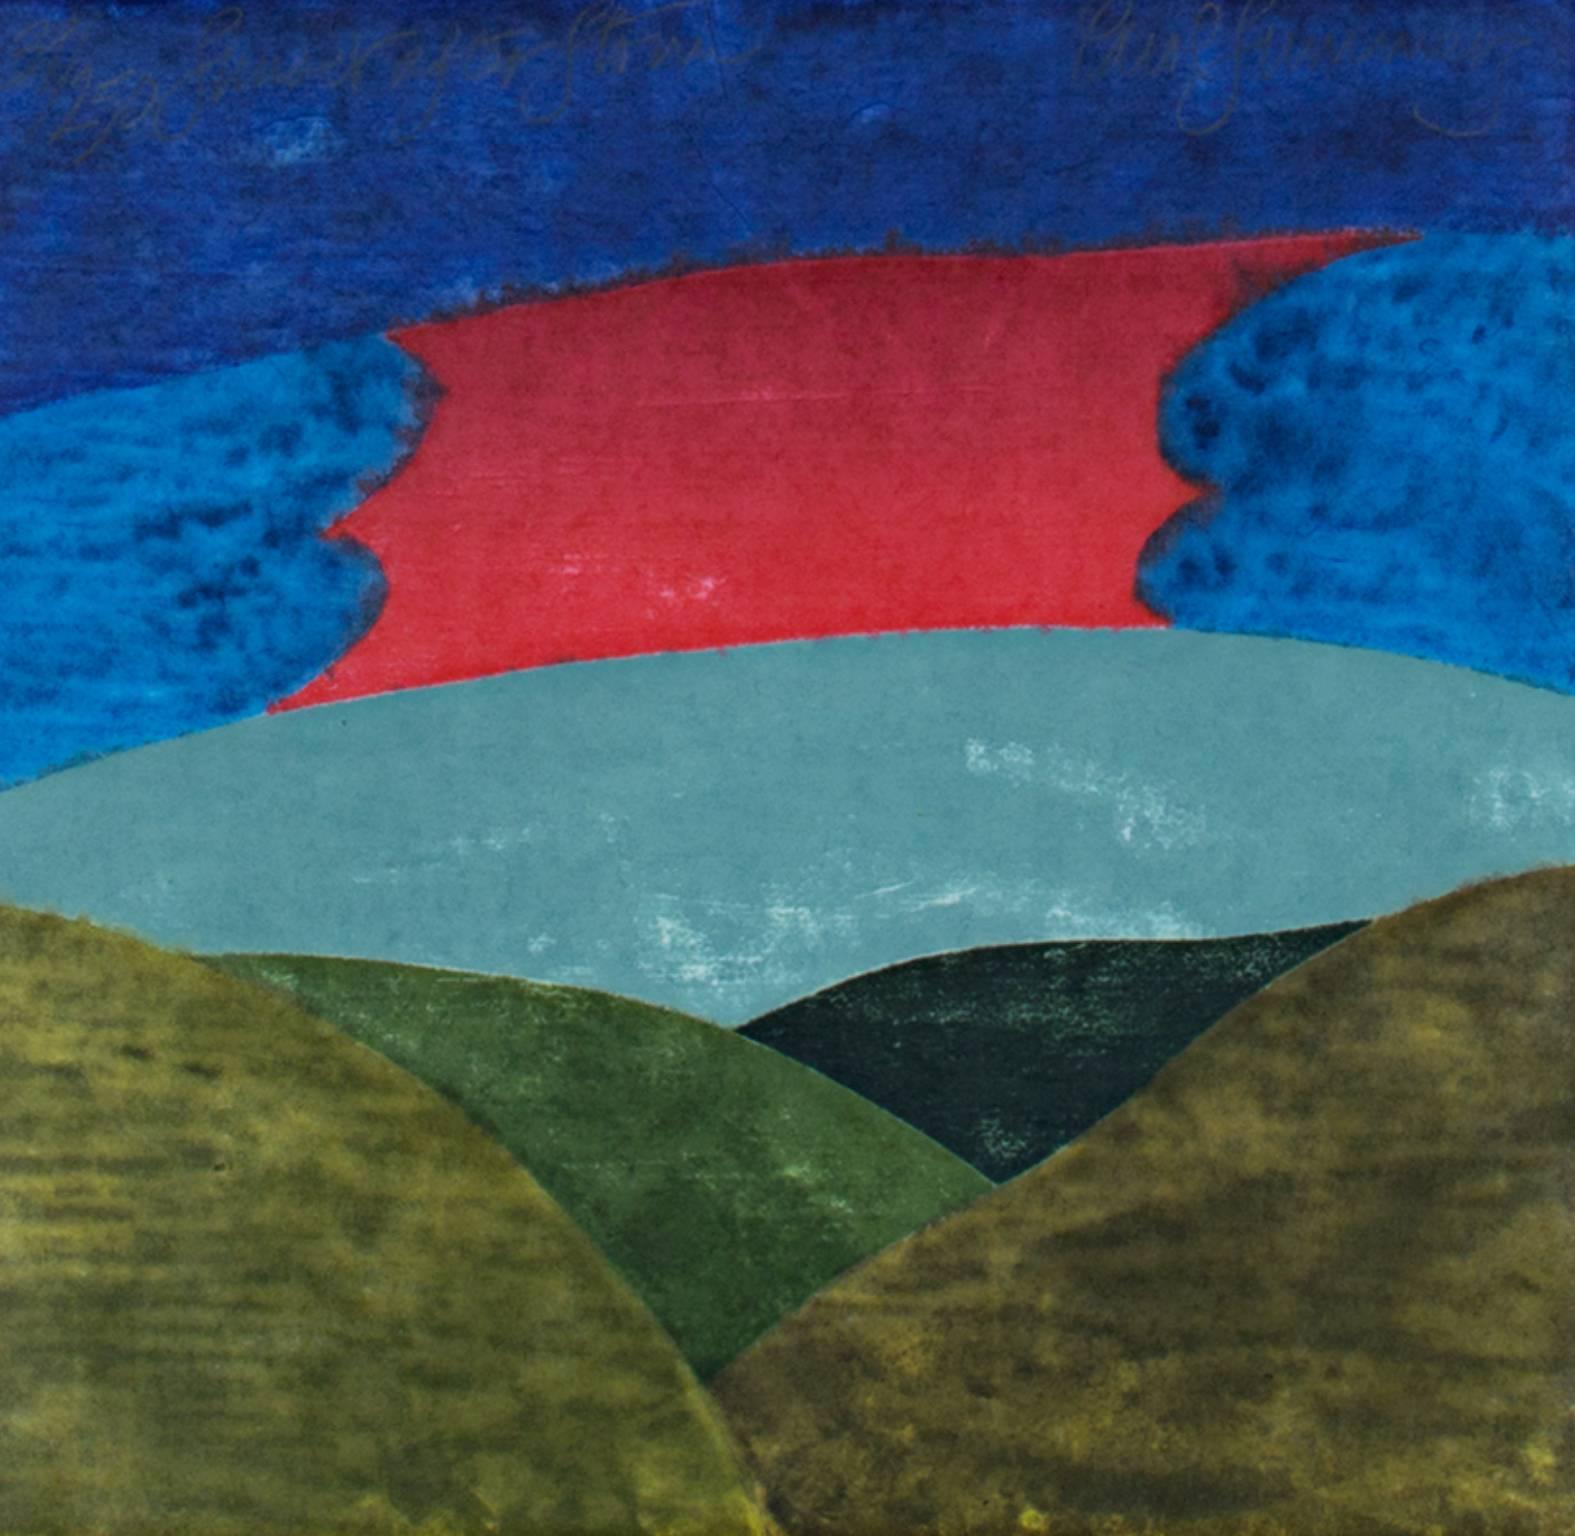 "Sonnenuntergang nach dem Sturm" ist ein von der Künstlerin Carol Summers signierter Original-Holzschnitt. Es zeigt den Himmel und die Berge in Grün, Rot und Blau. Es handelt sich um die Auflage 39/250, Gussform A 8171, mit signiertem Katalog. 

12"